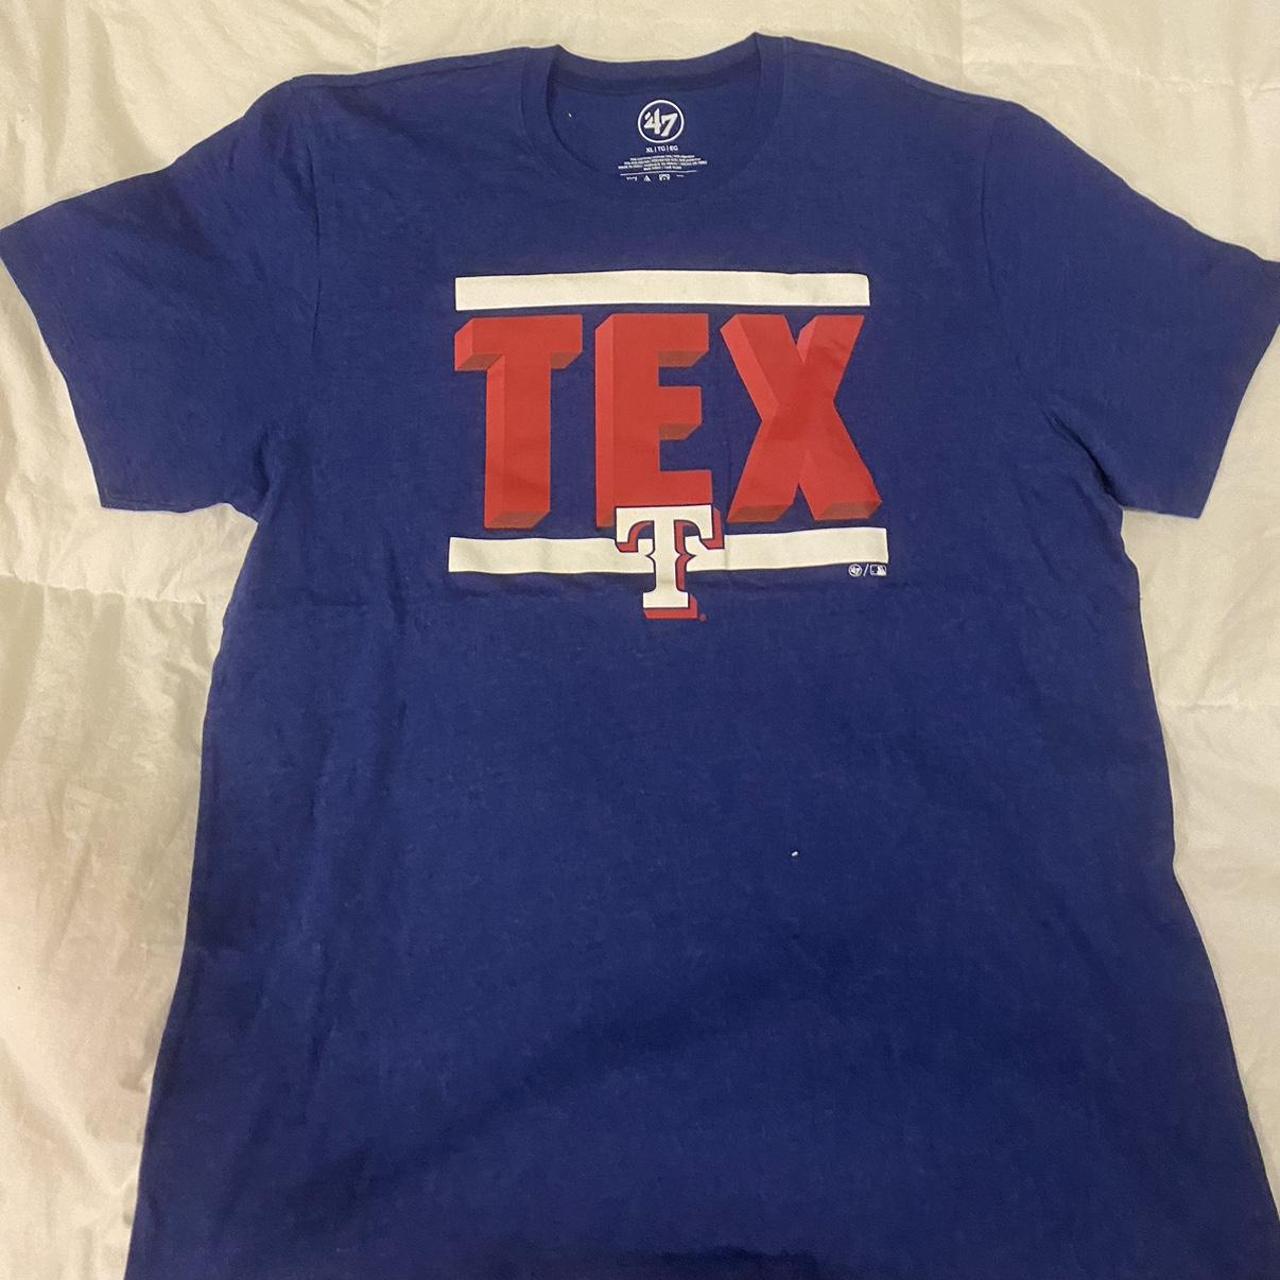 texas rangers baseball tee from '47 brand mens XL, - Depop